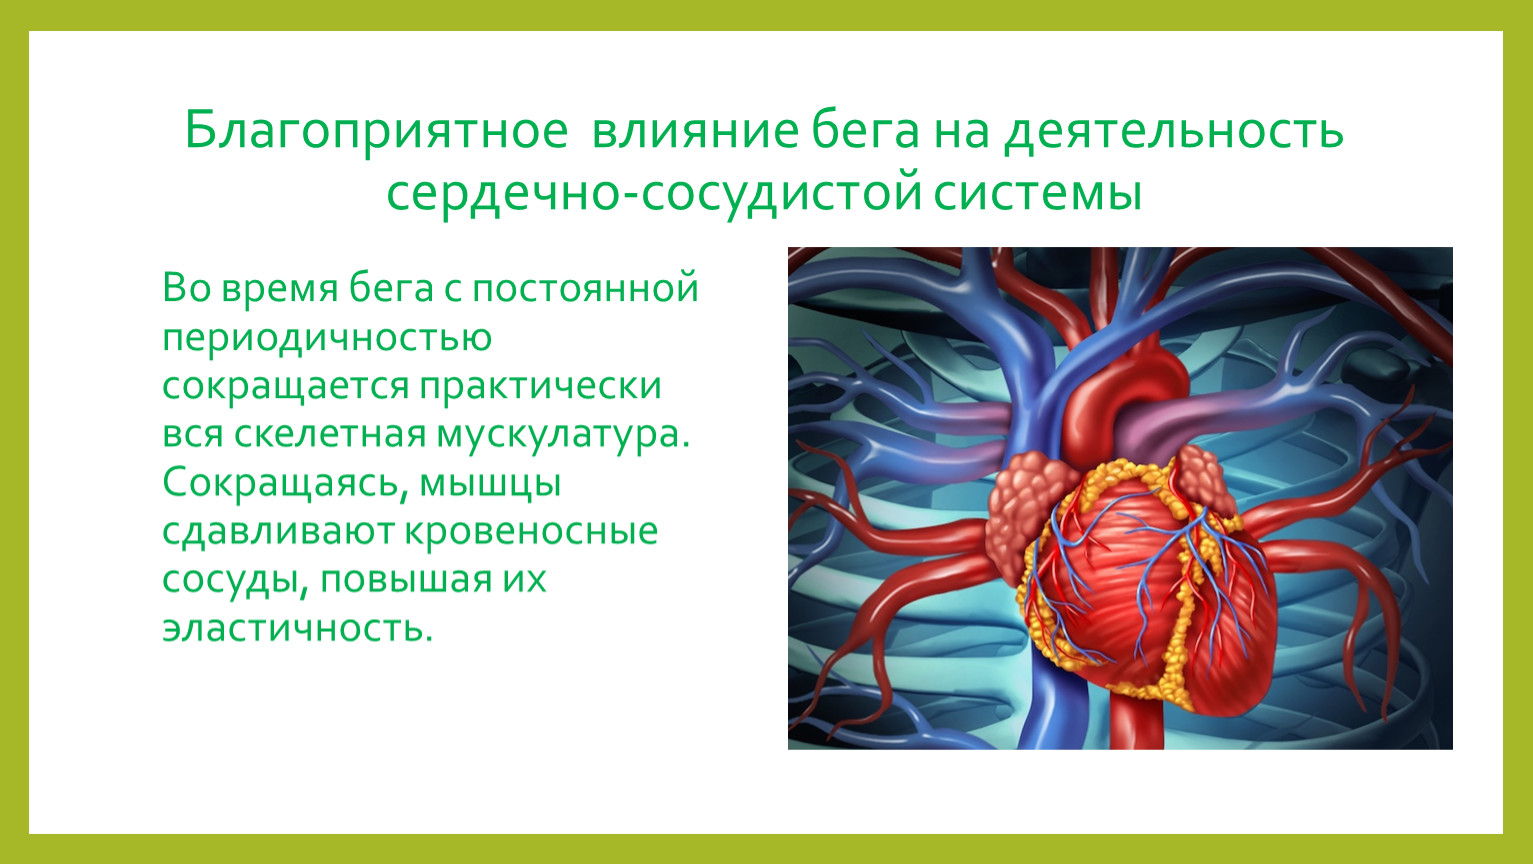 Физических нагрузок кровообращение. Влияние на сердечно-сосудистую систему. Влияние бега на сердечно-сосудистую систему. Благоприятное влияние на сердечно-сосудистую систему. Влияние на кровеносную систему.